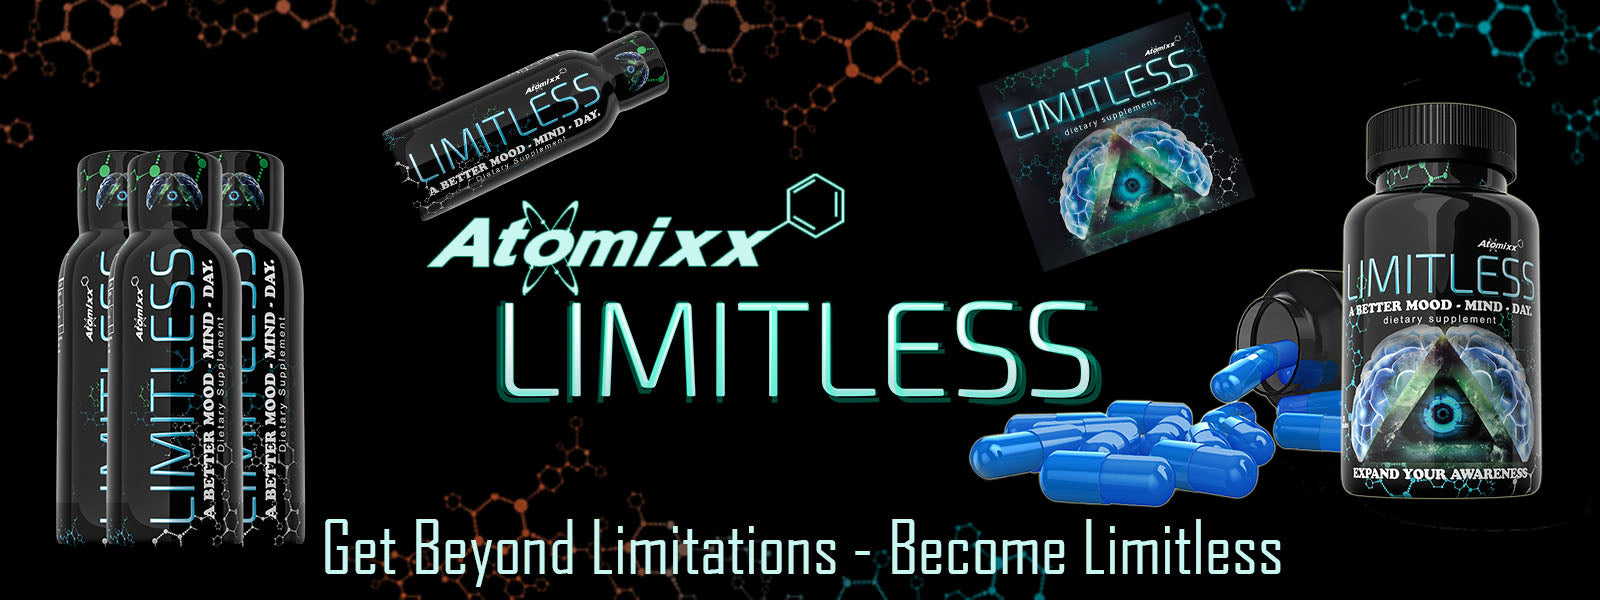 Atomixx Limitless